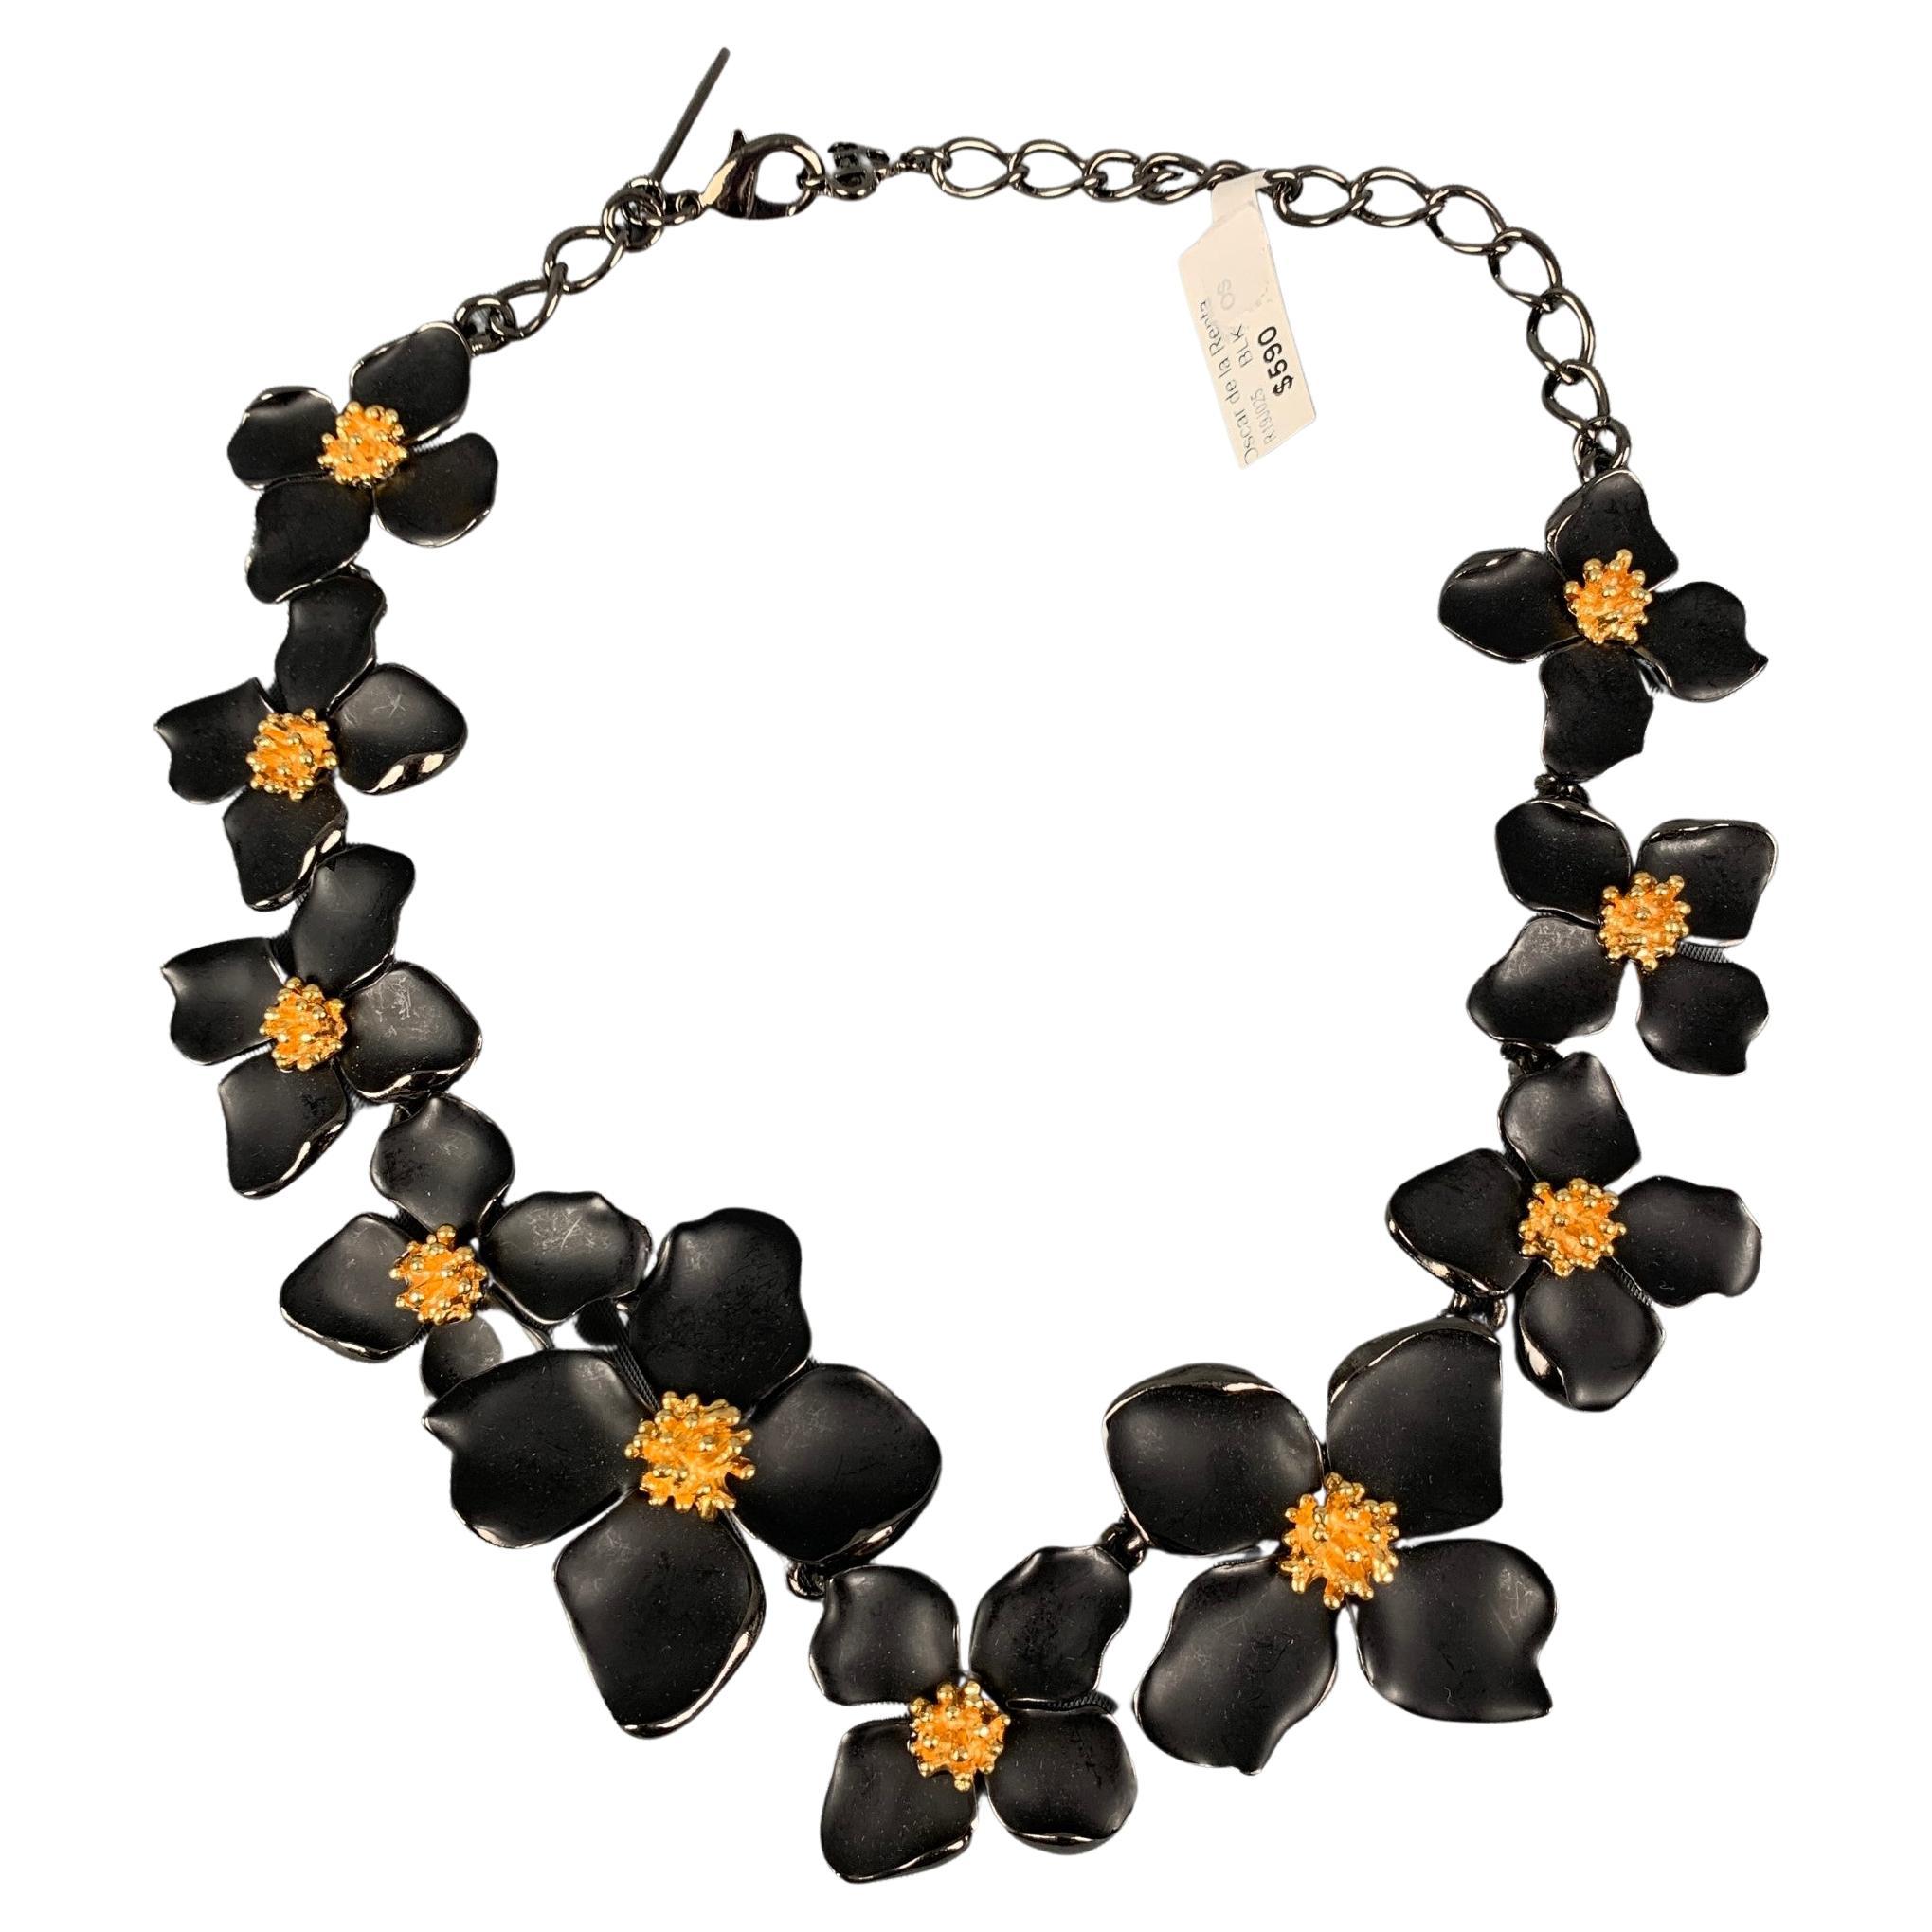 OSCAR DE LA RENTA Black Gold Floral Metal Necklace